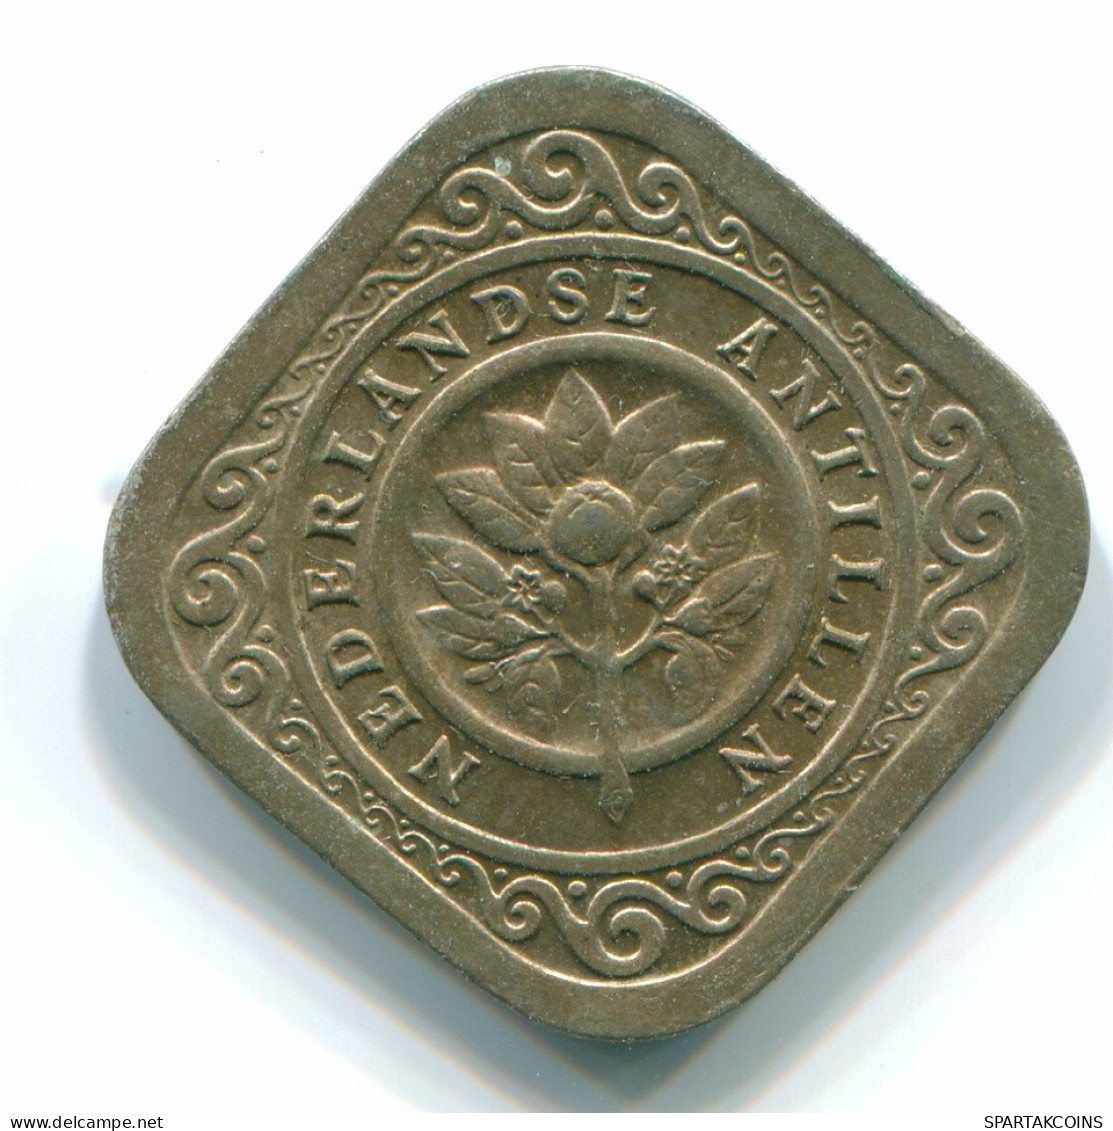 5 CENTS 1967 NETHERLANDS ANTILLES Nickel Colonial Coin #S12460.U.A - Antillas Neerlandesas